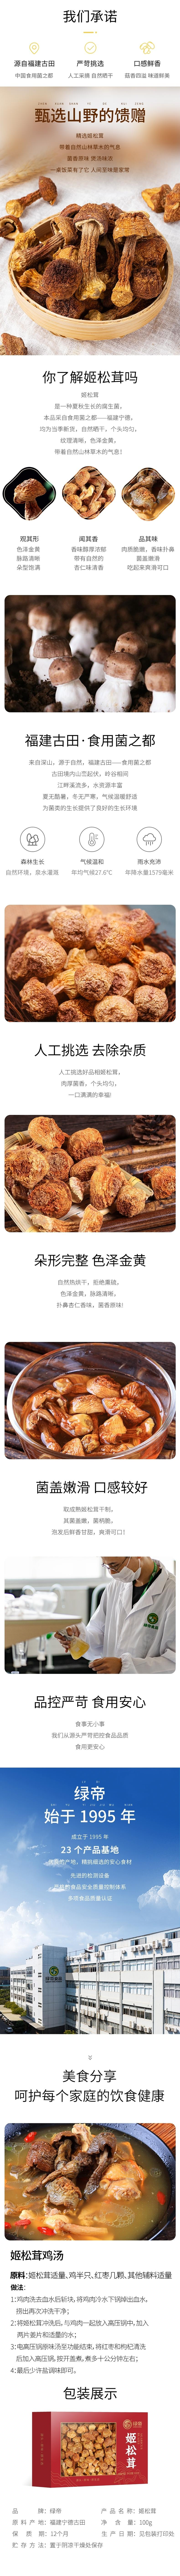 绿帝姬松茸特产干货菌菇食材煲汤送礼100g